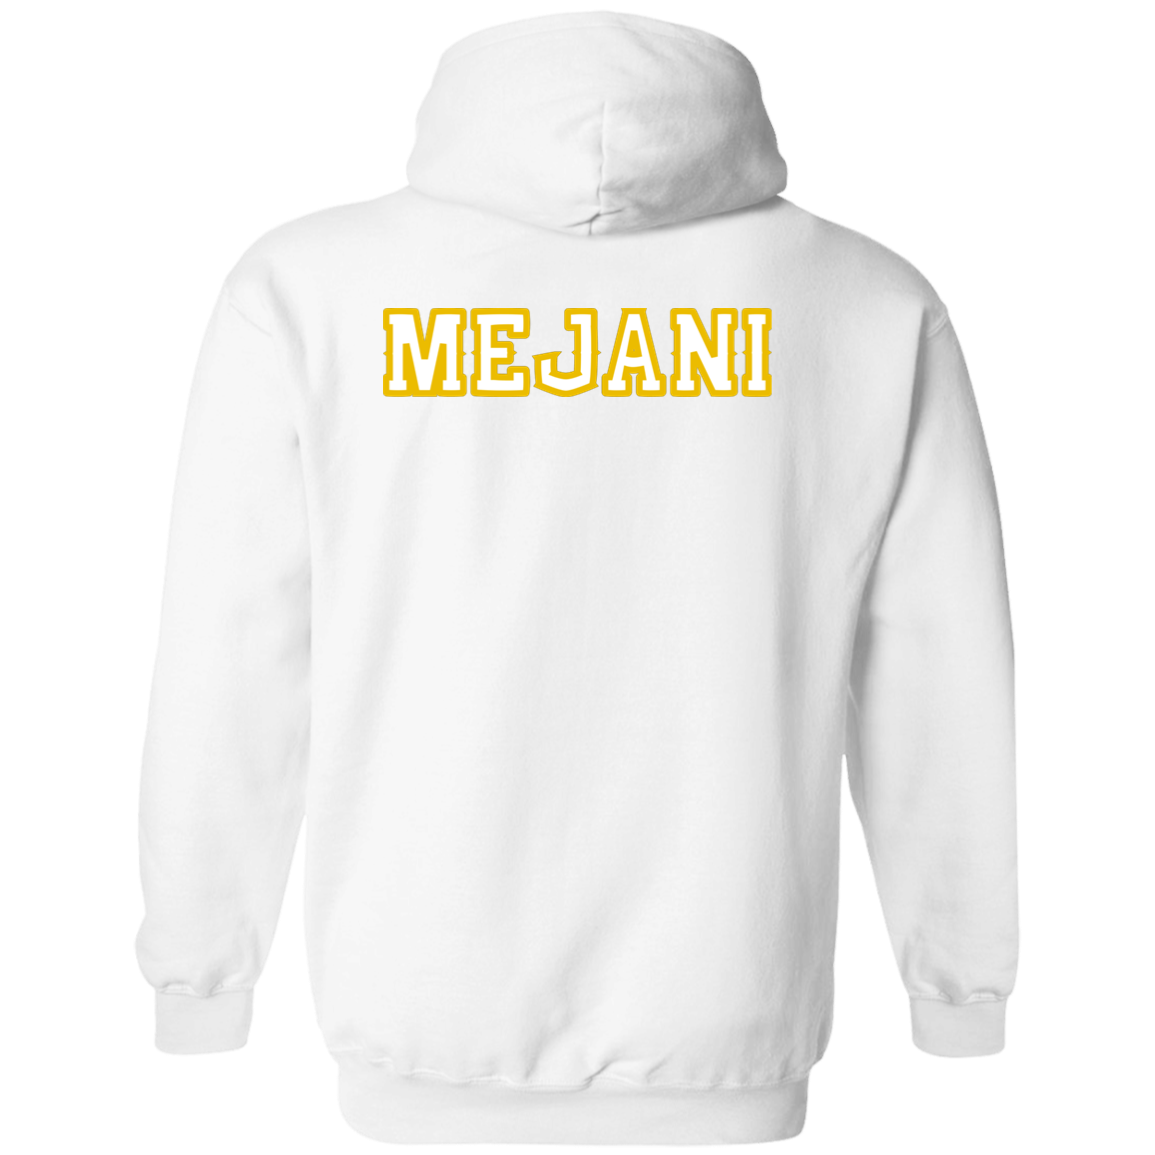 Meja personalized hoodie